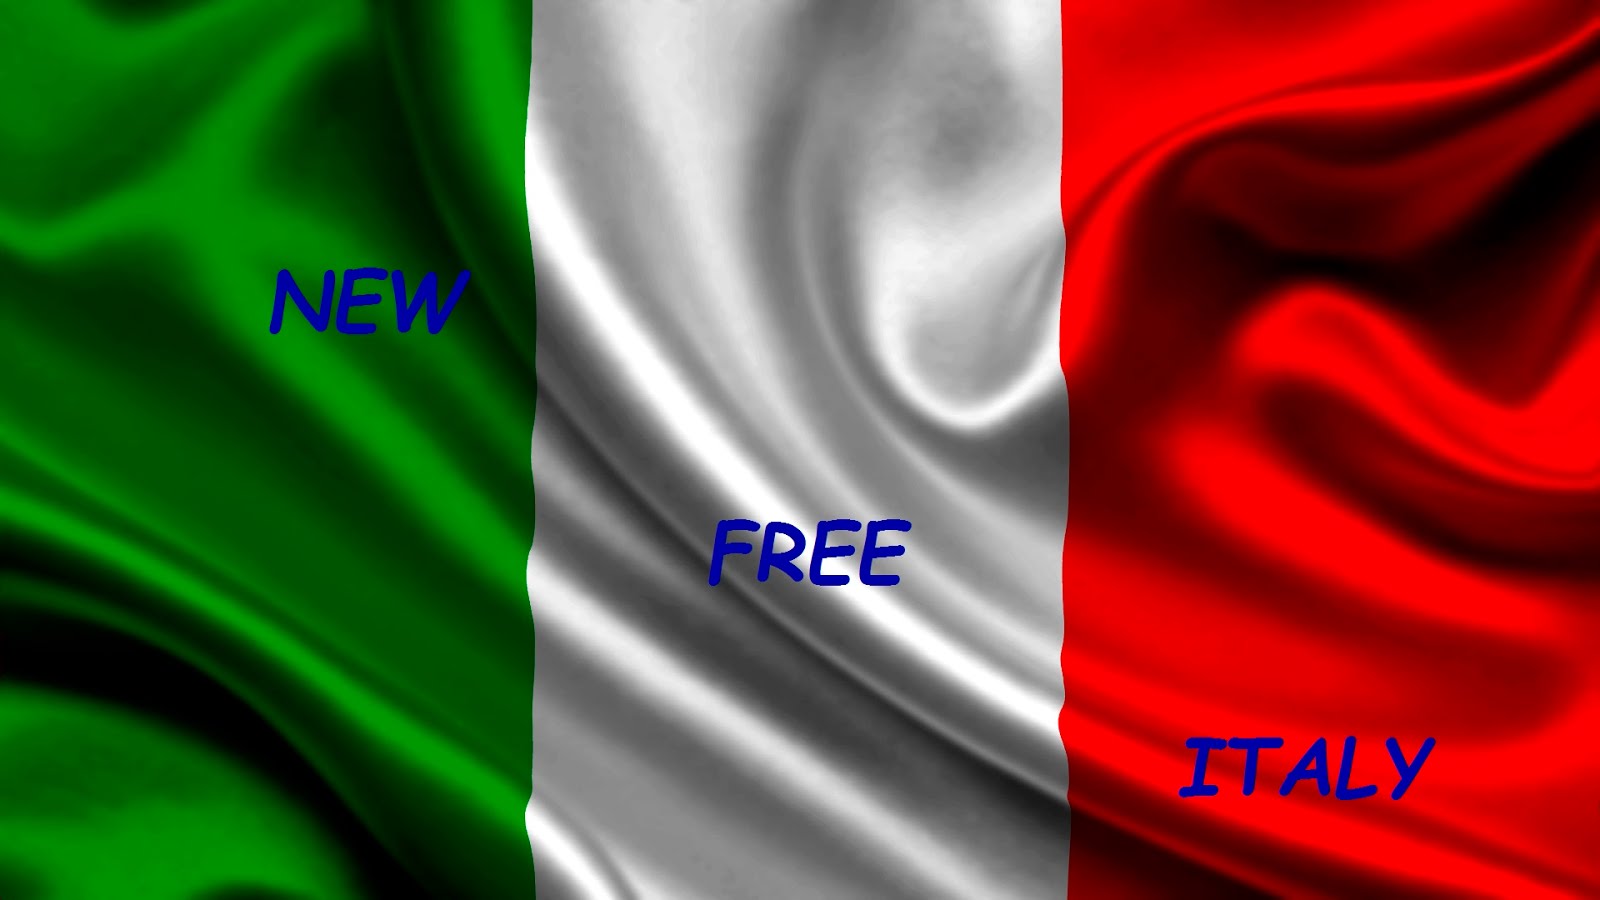 NEW FREE ITALY